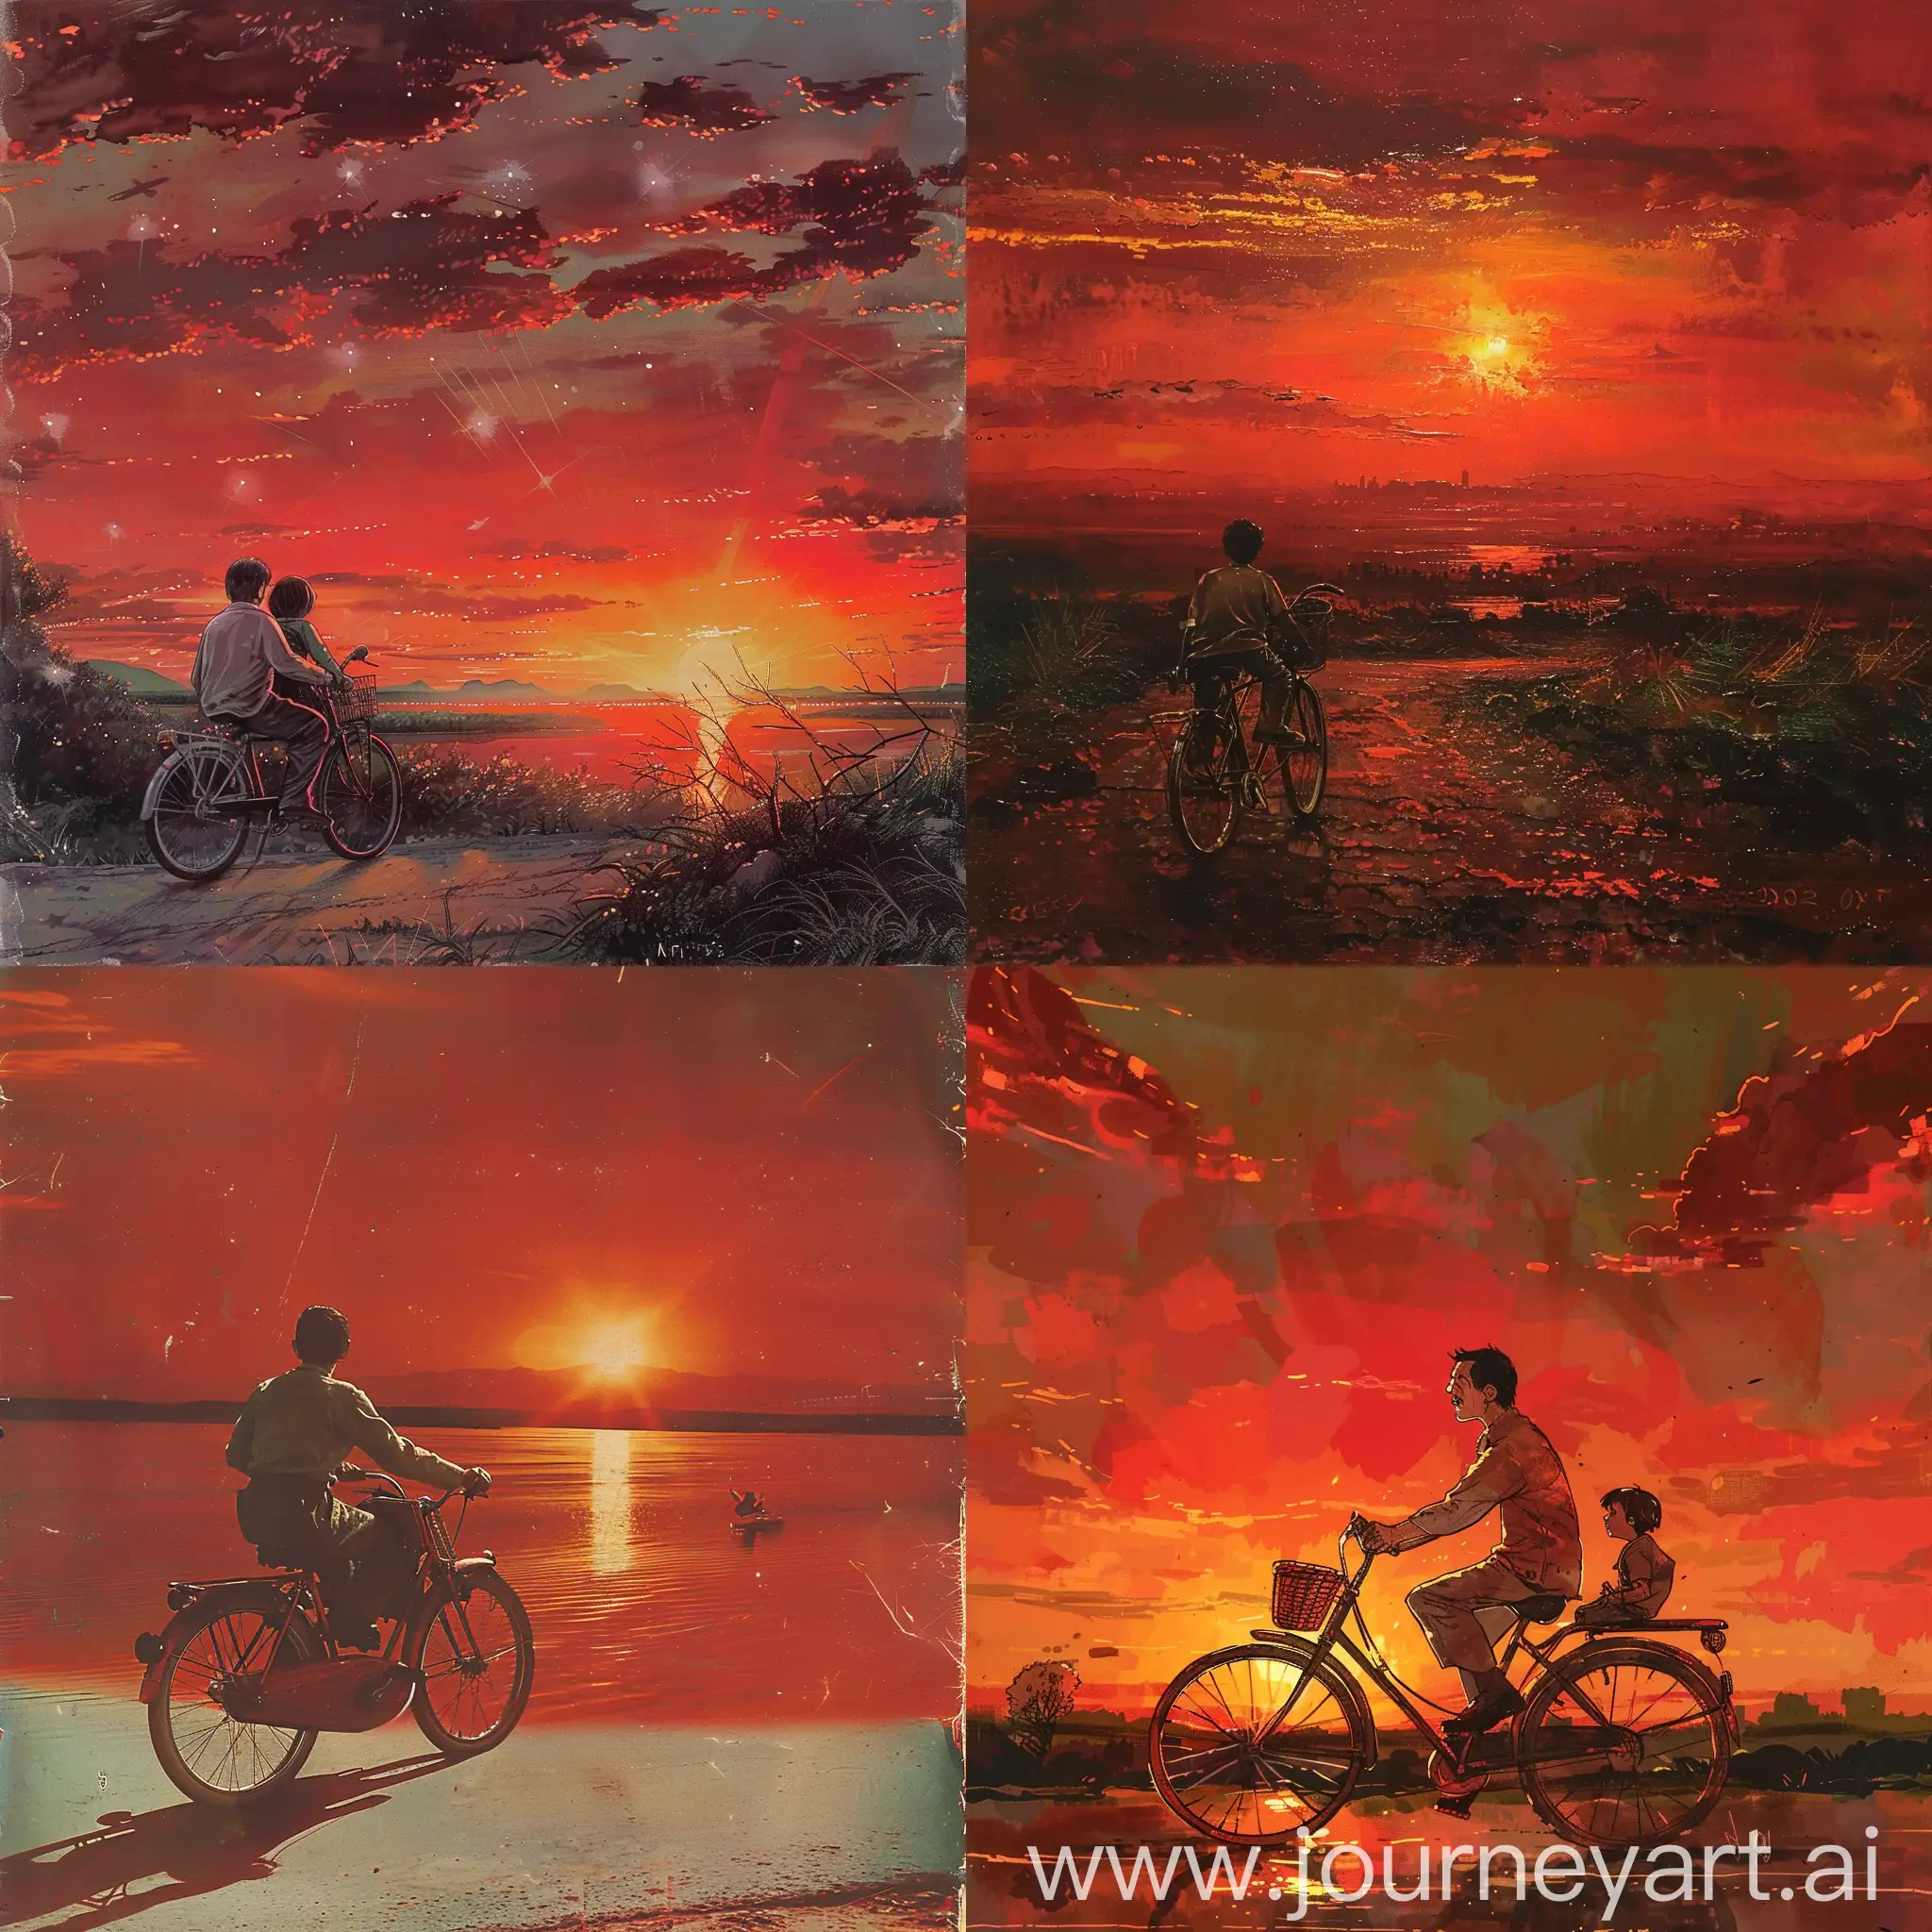 小时候我父亲骑着老式凤凰牌自行车，我坐在后座，沿着公路，夕阳西下，染红了天空